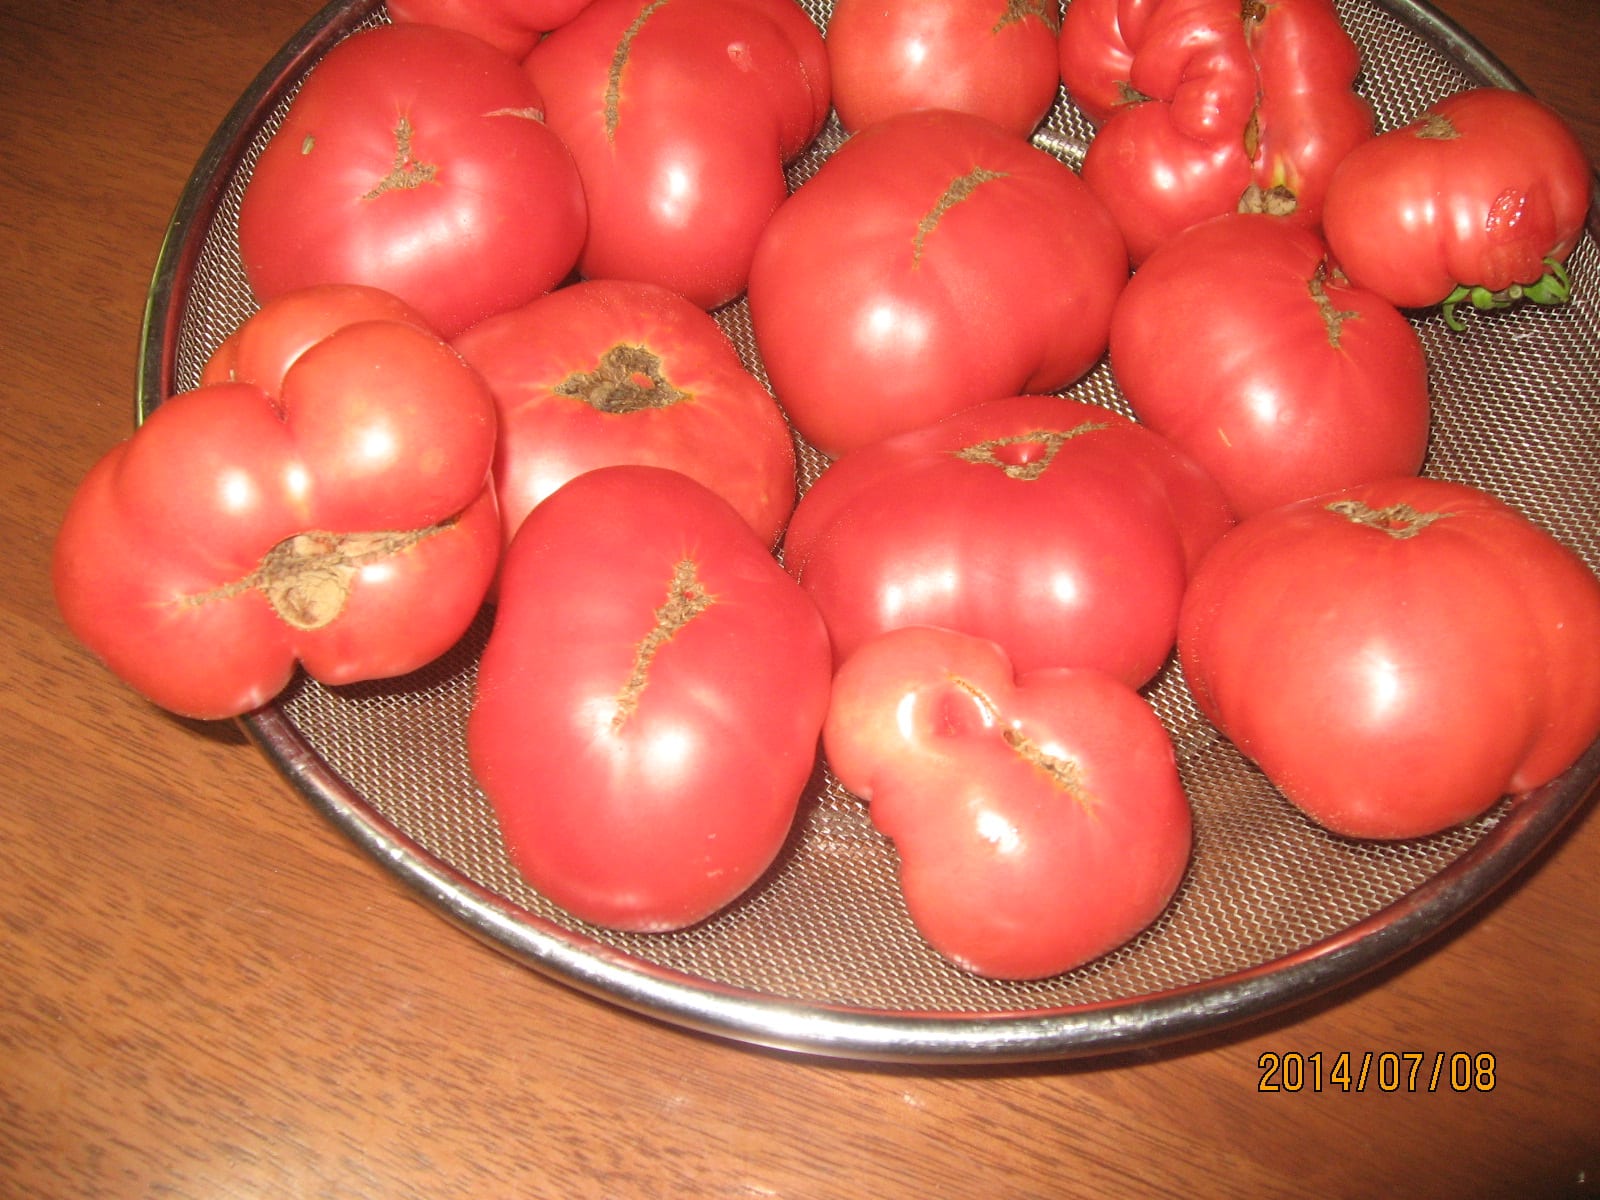 収穫で有り余るトマト 白寿を目指す抗衰老ライフへの誘い